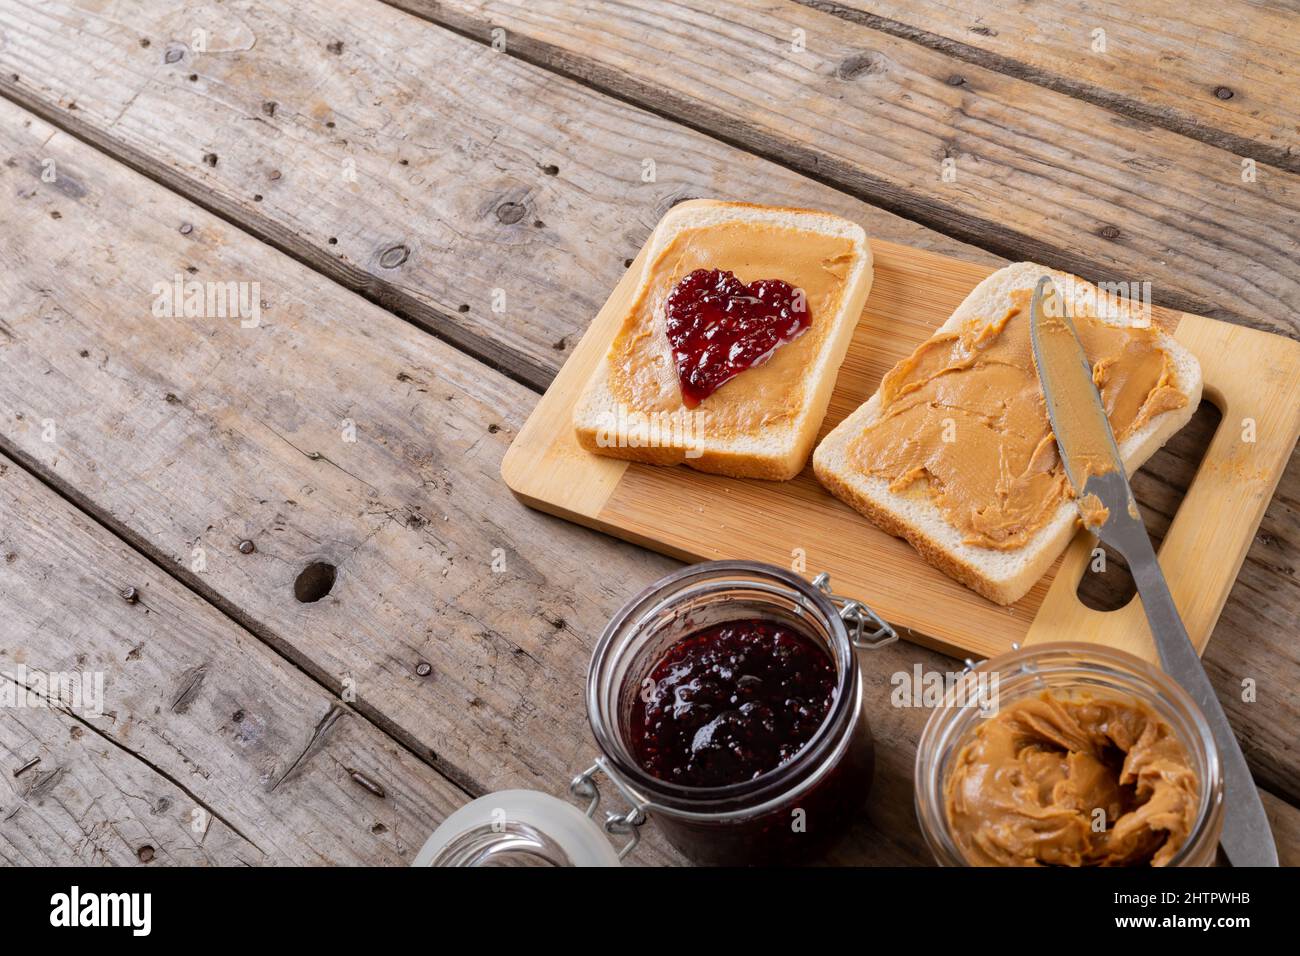 Vista ad angolo alto del burro di arachidi a faccia aperta e sandwich di gelatina sul bordo di servizio con vasetti al tavolo Foto Stock